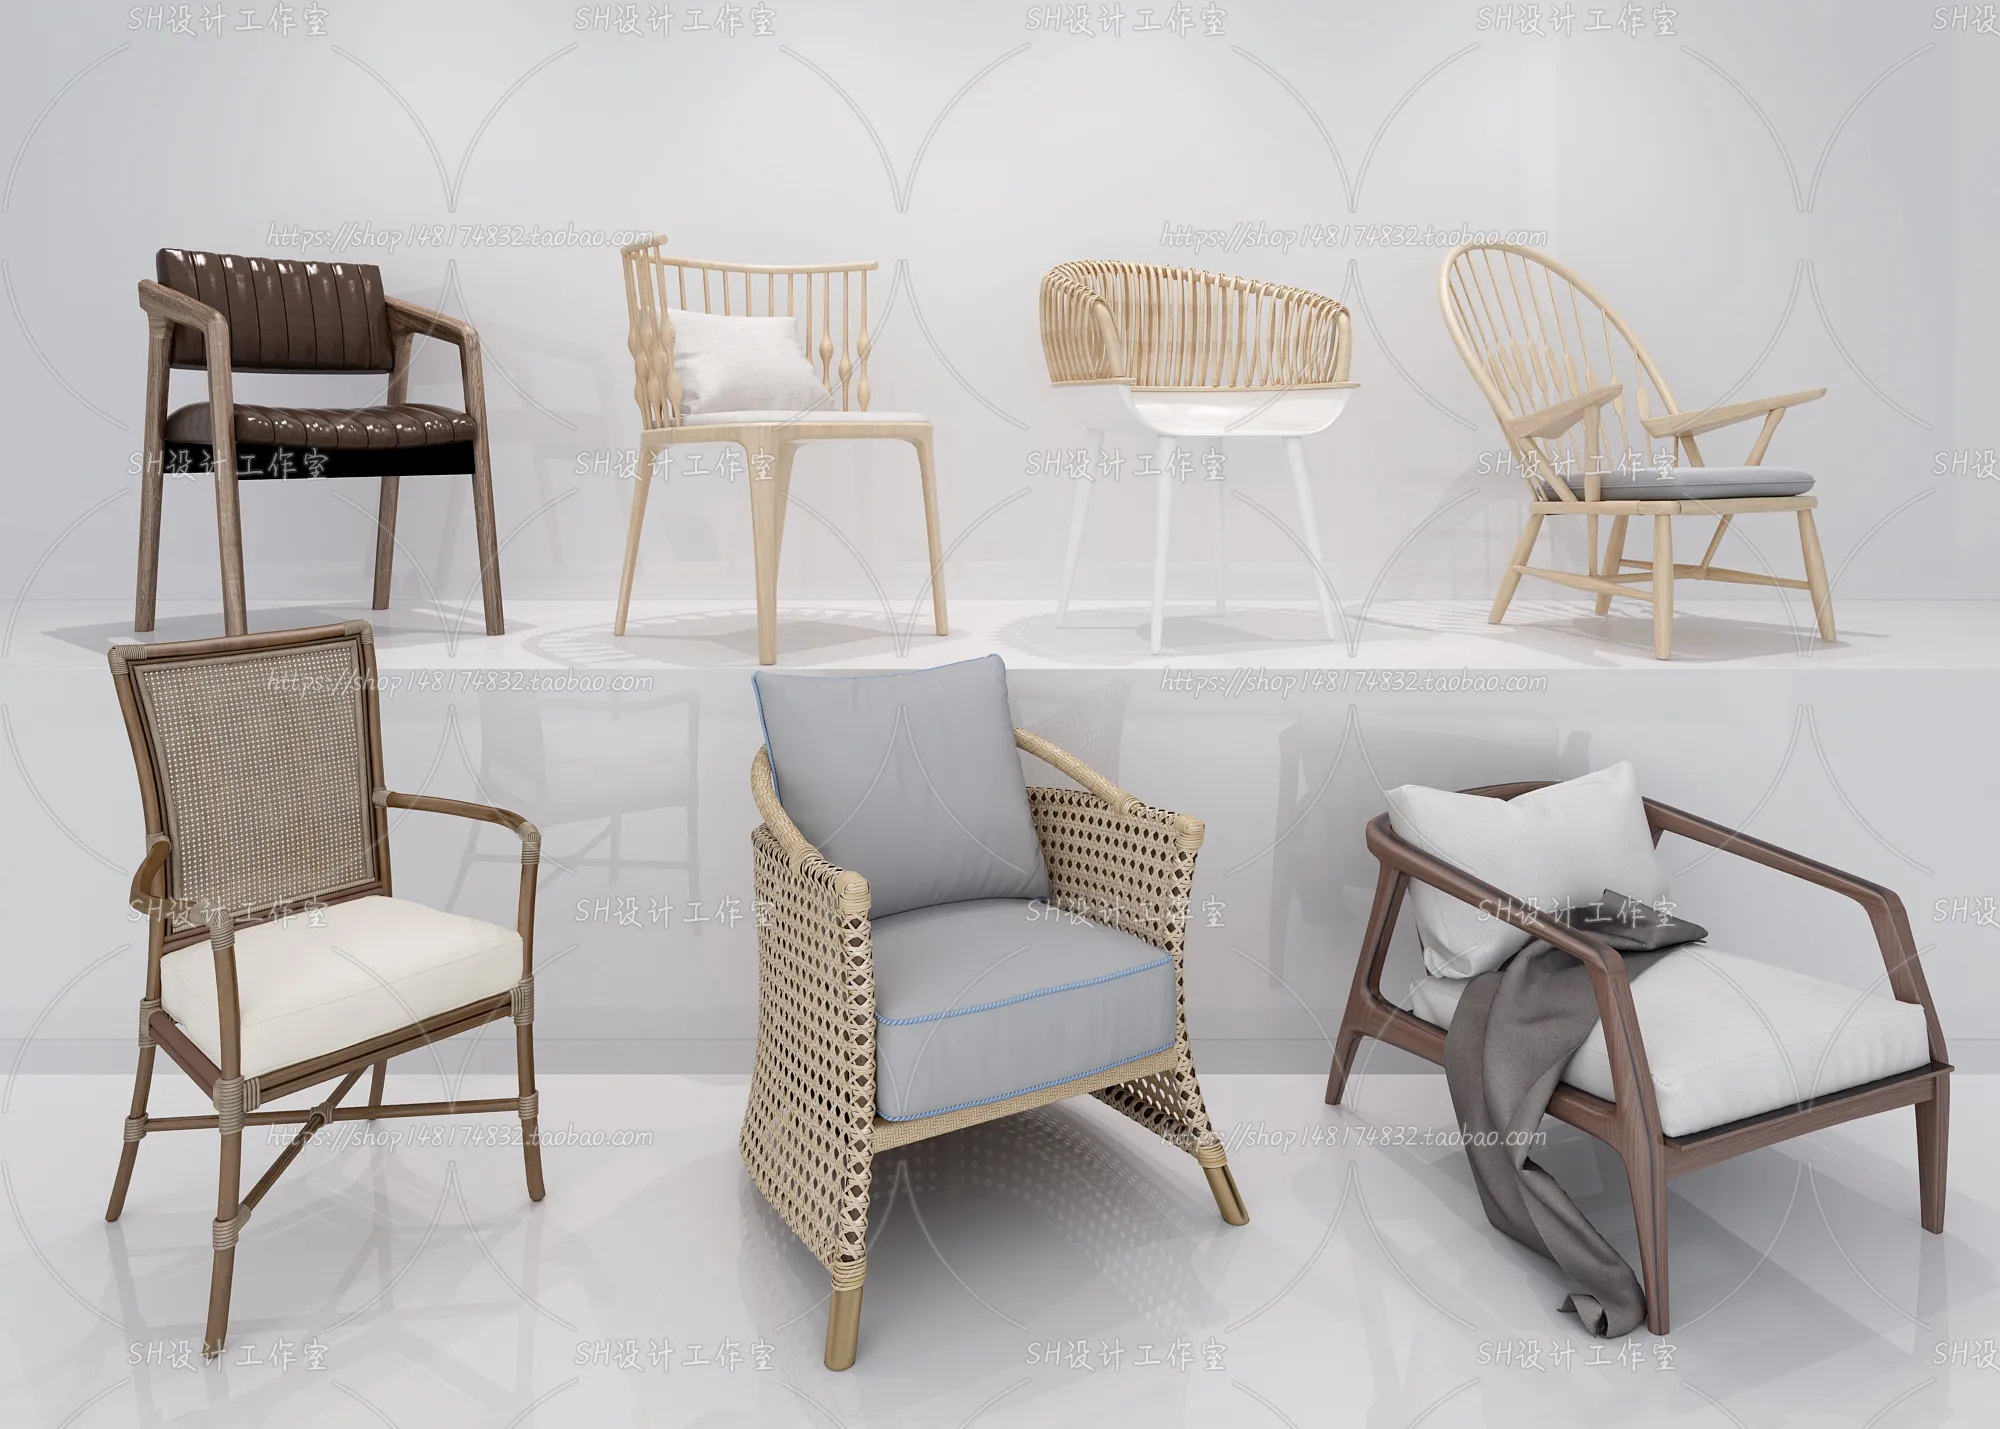 Chair – Single Chair 3D Models – 2040